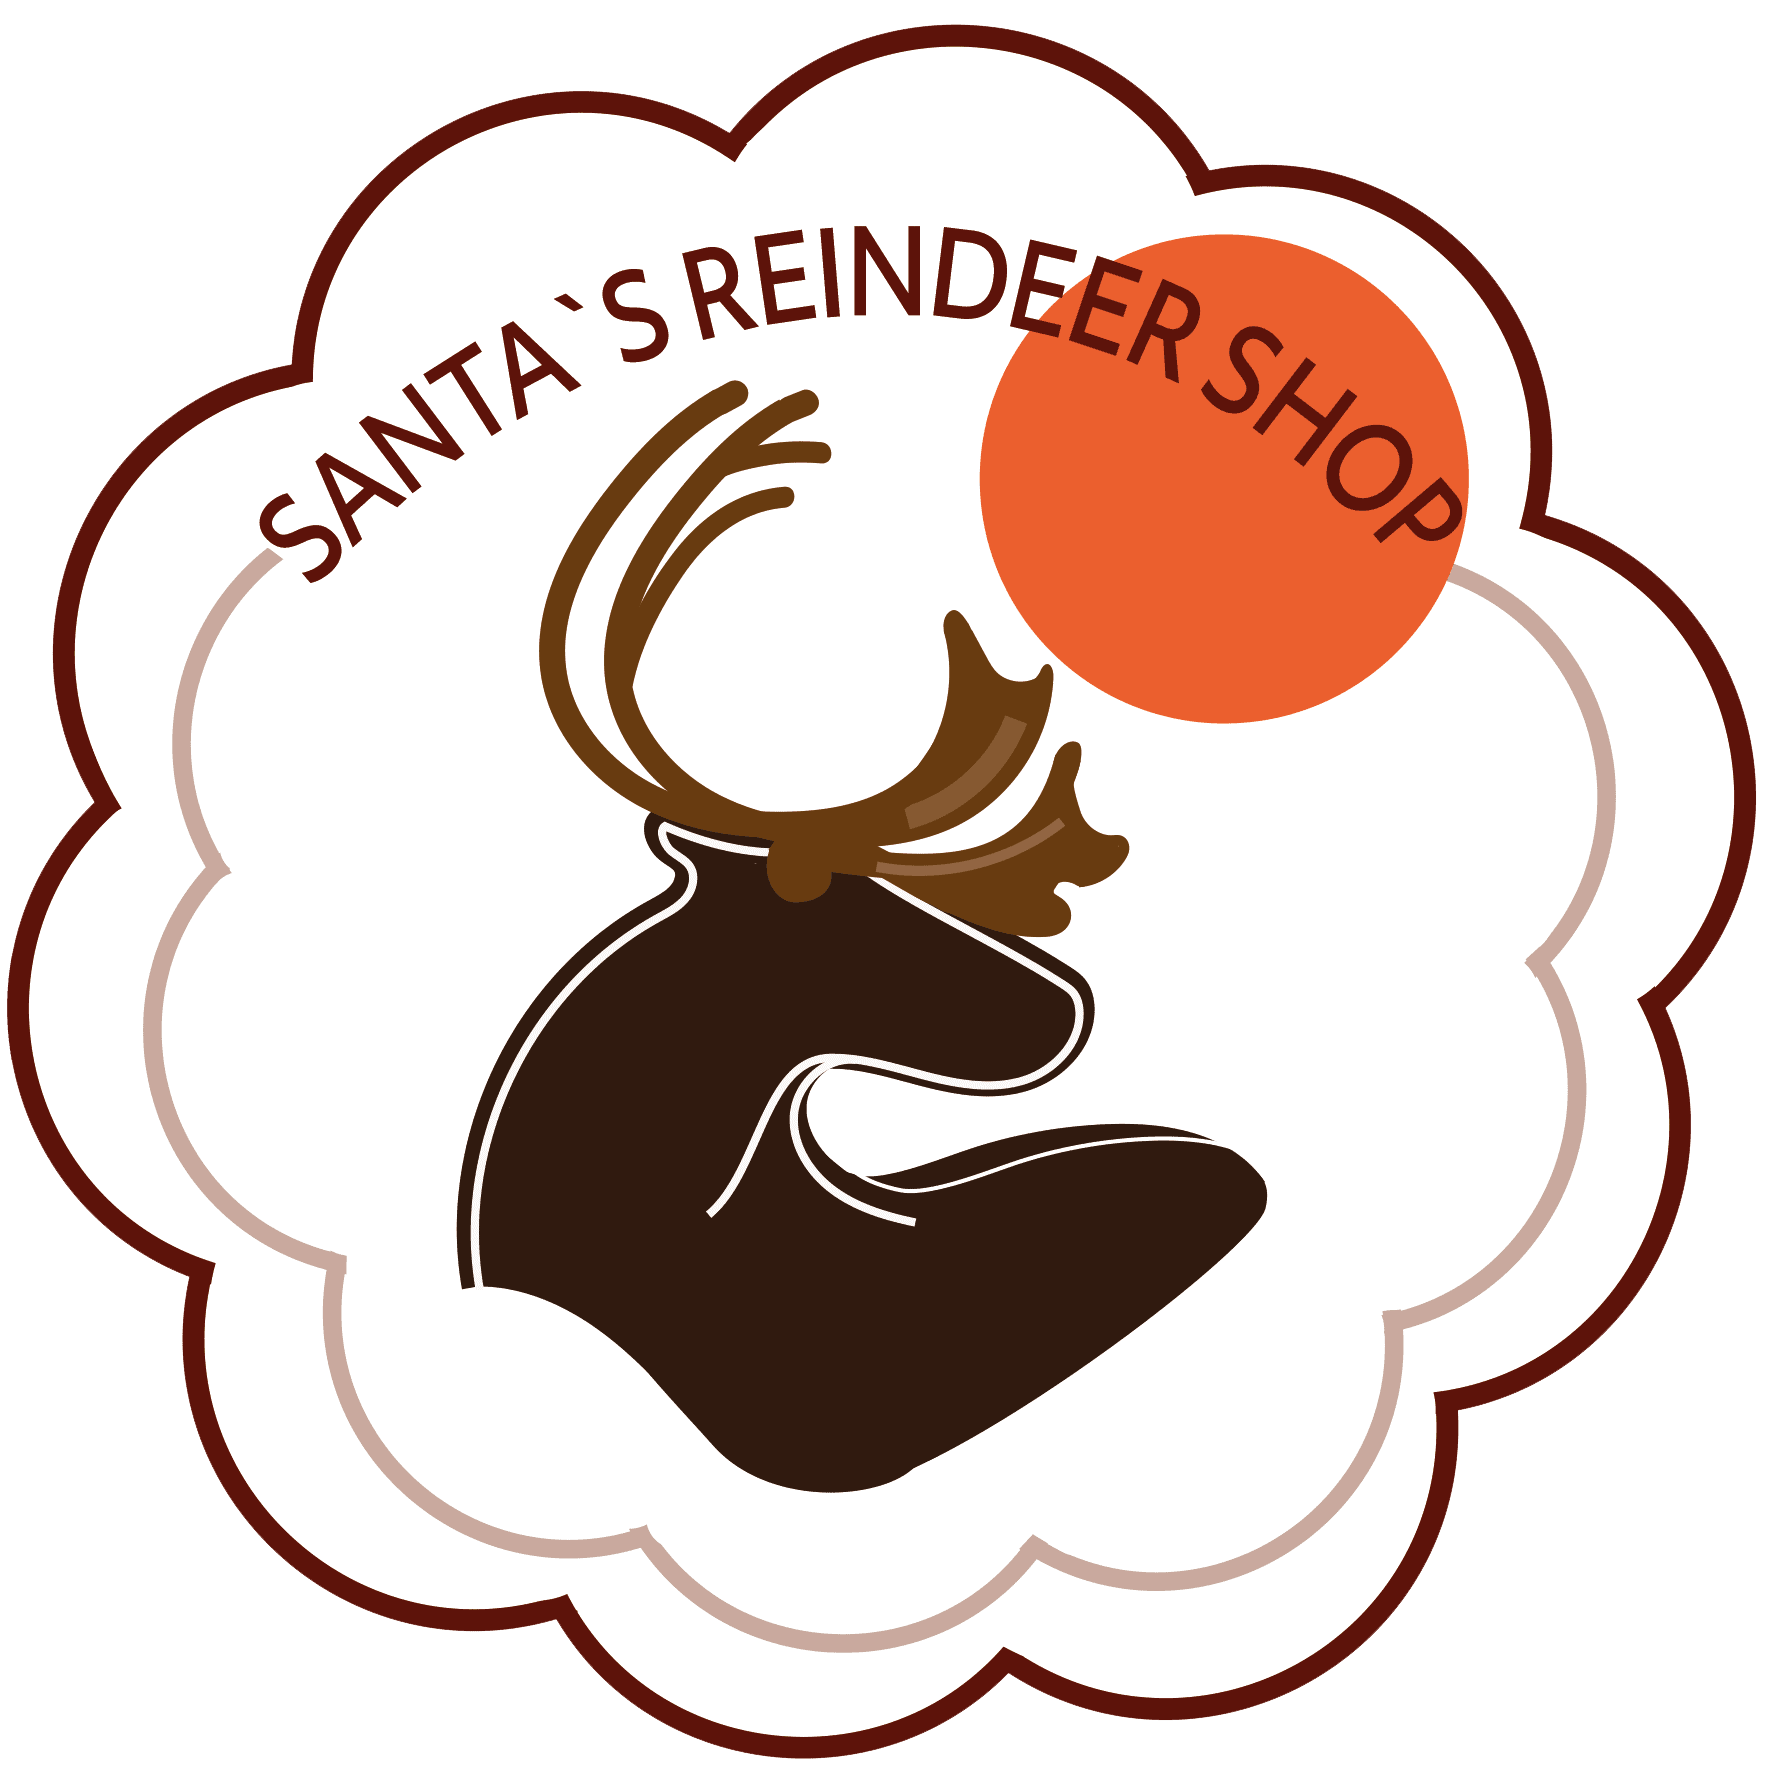 Santa's Reinder Shop Rovaniemi Finland